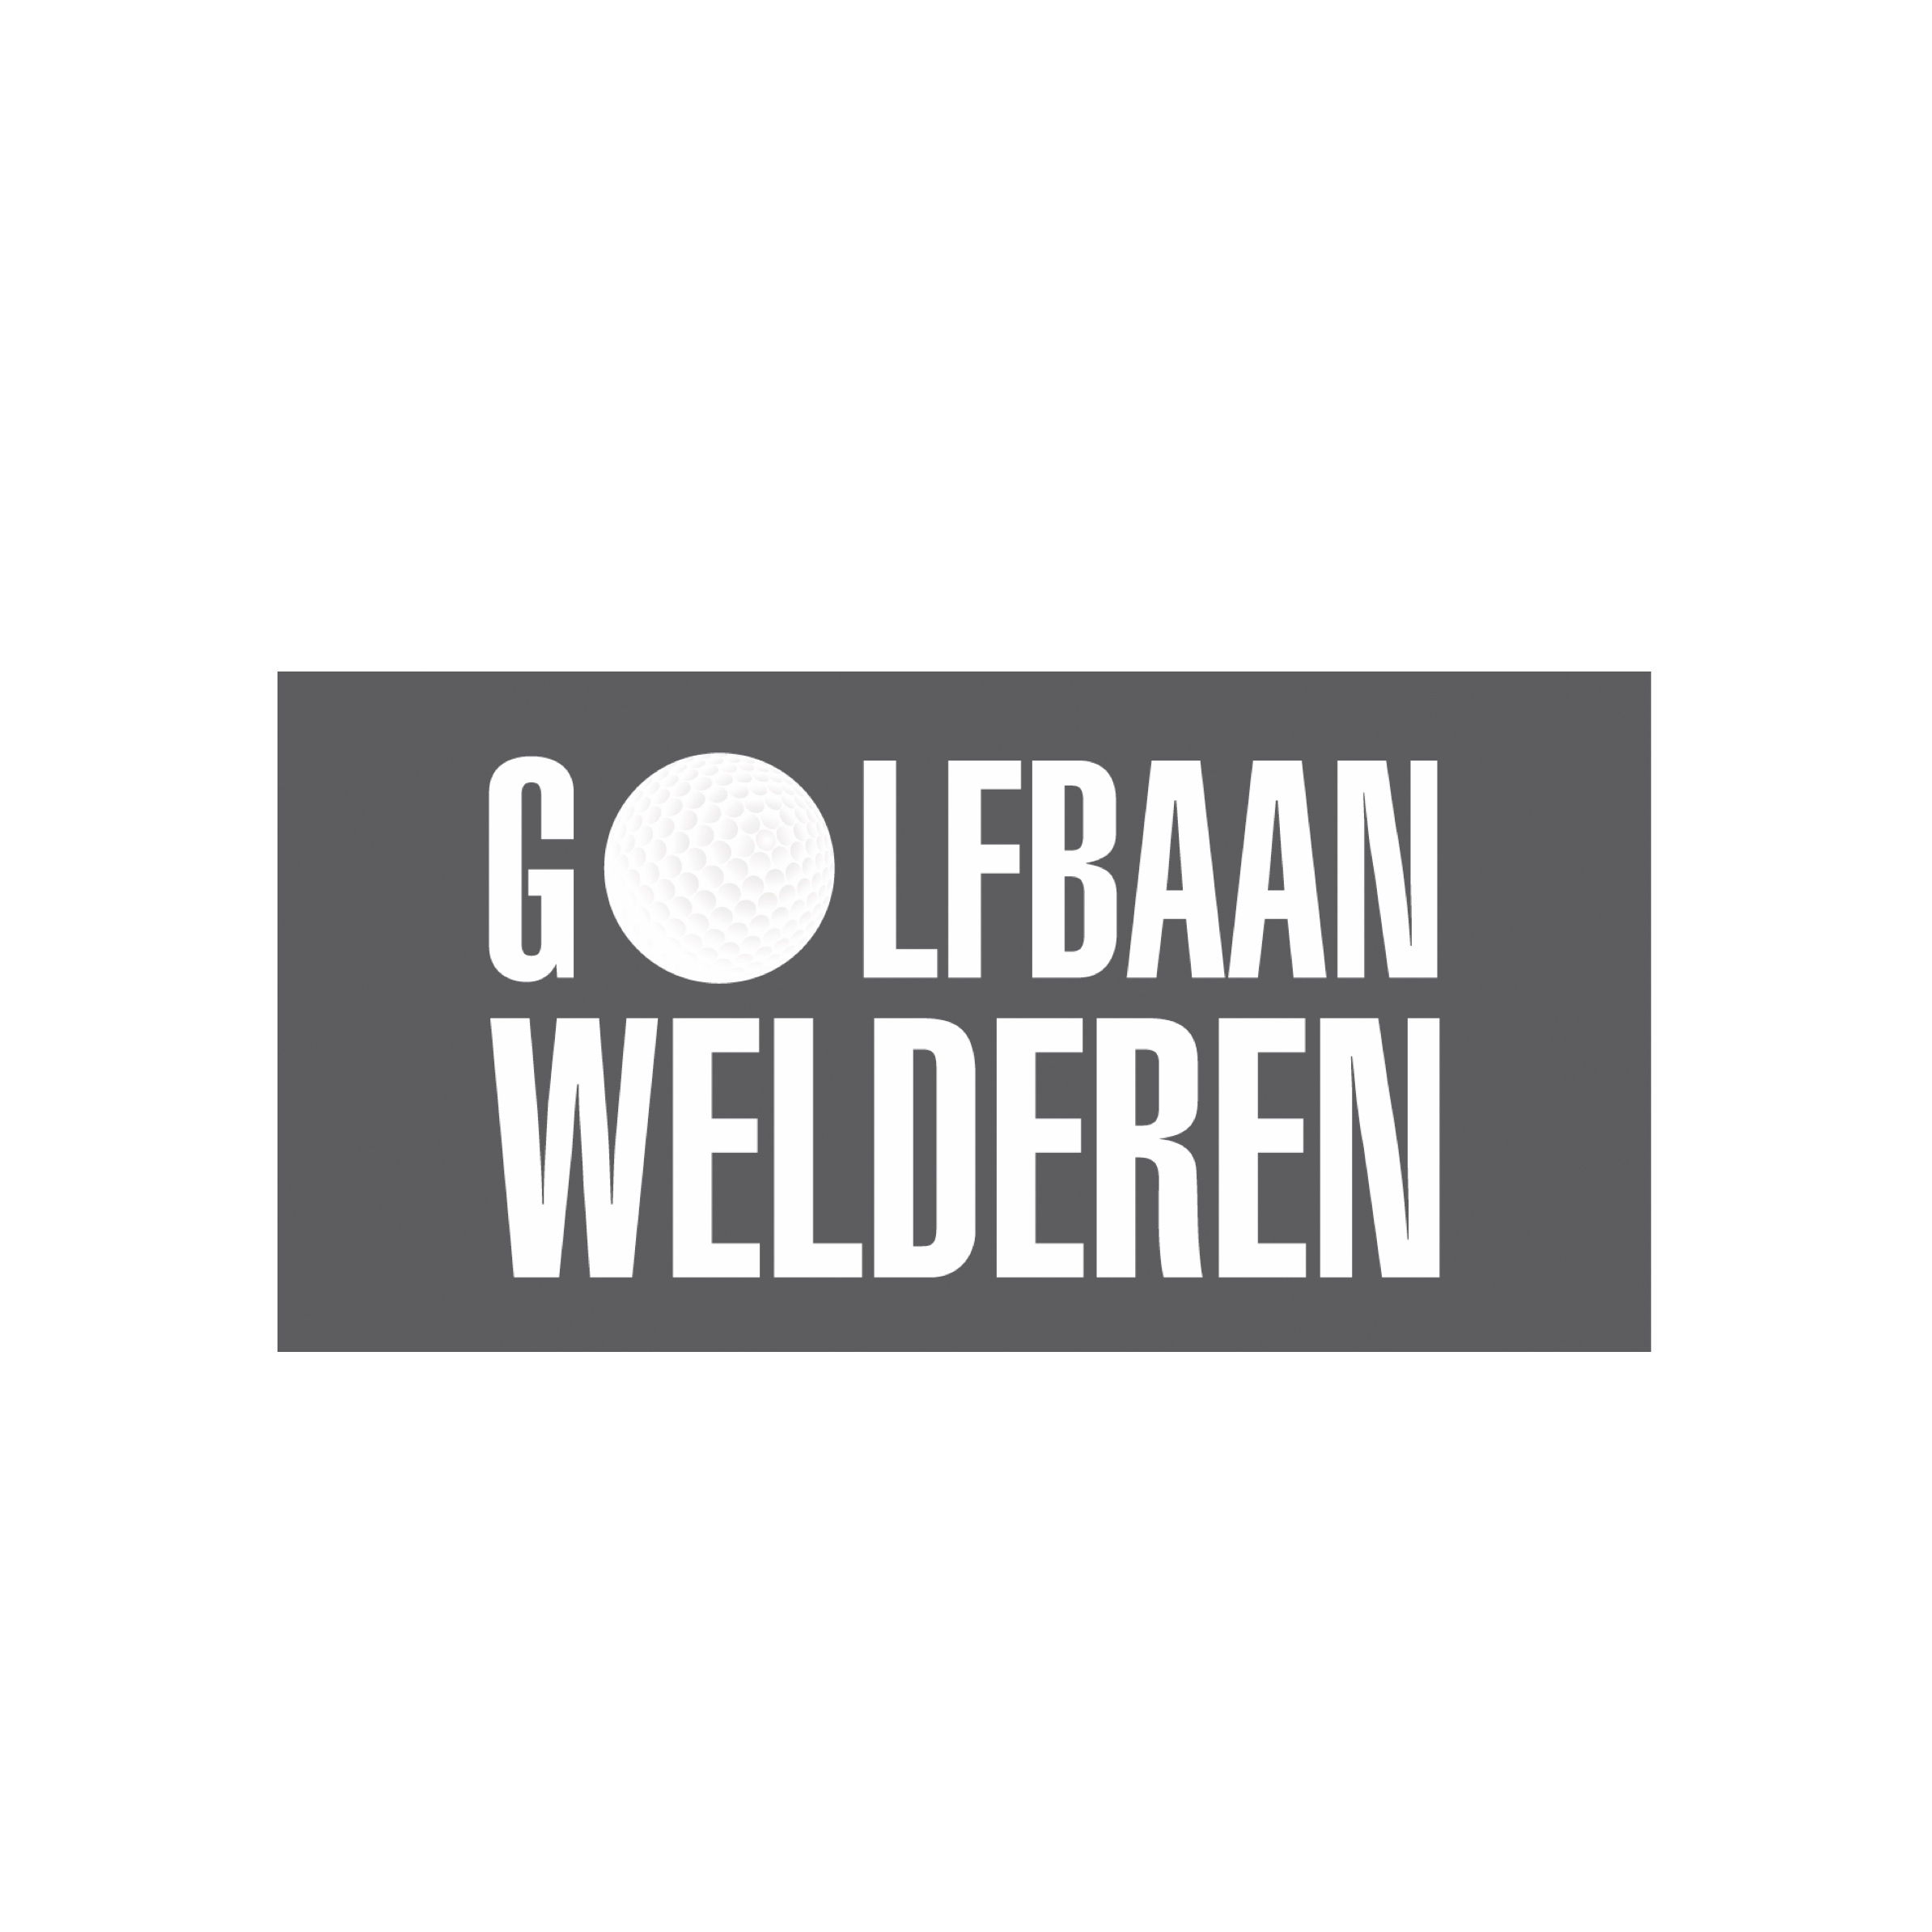 67. Welderen/NL (Landgoed Welderen)